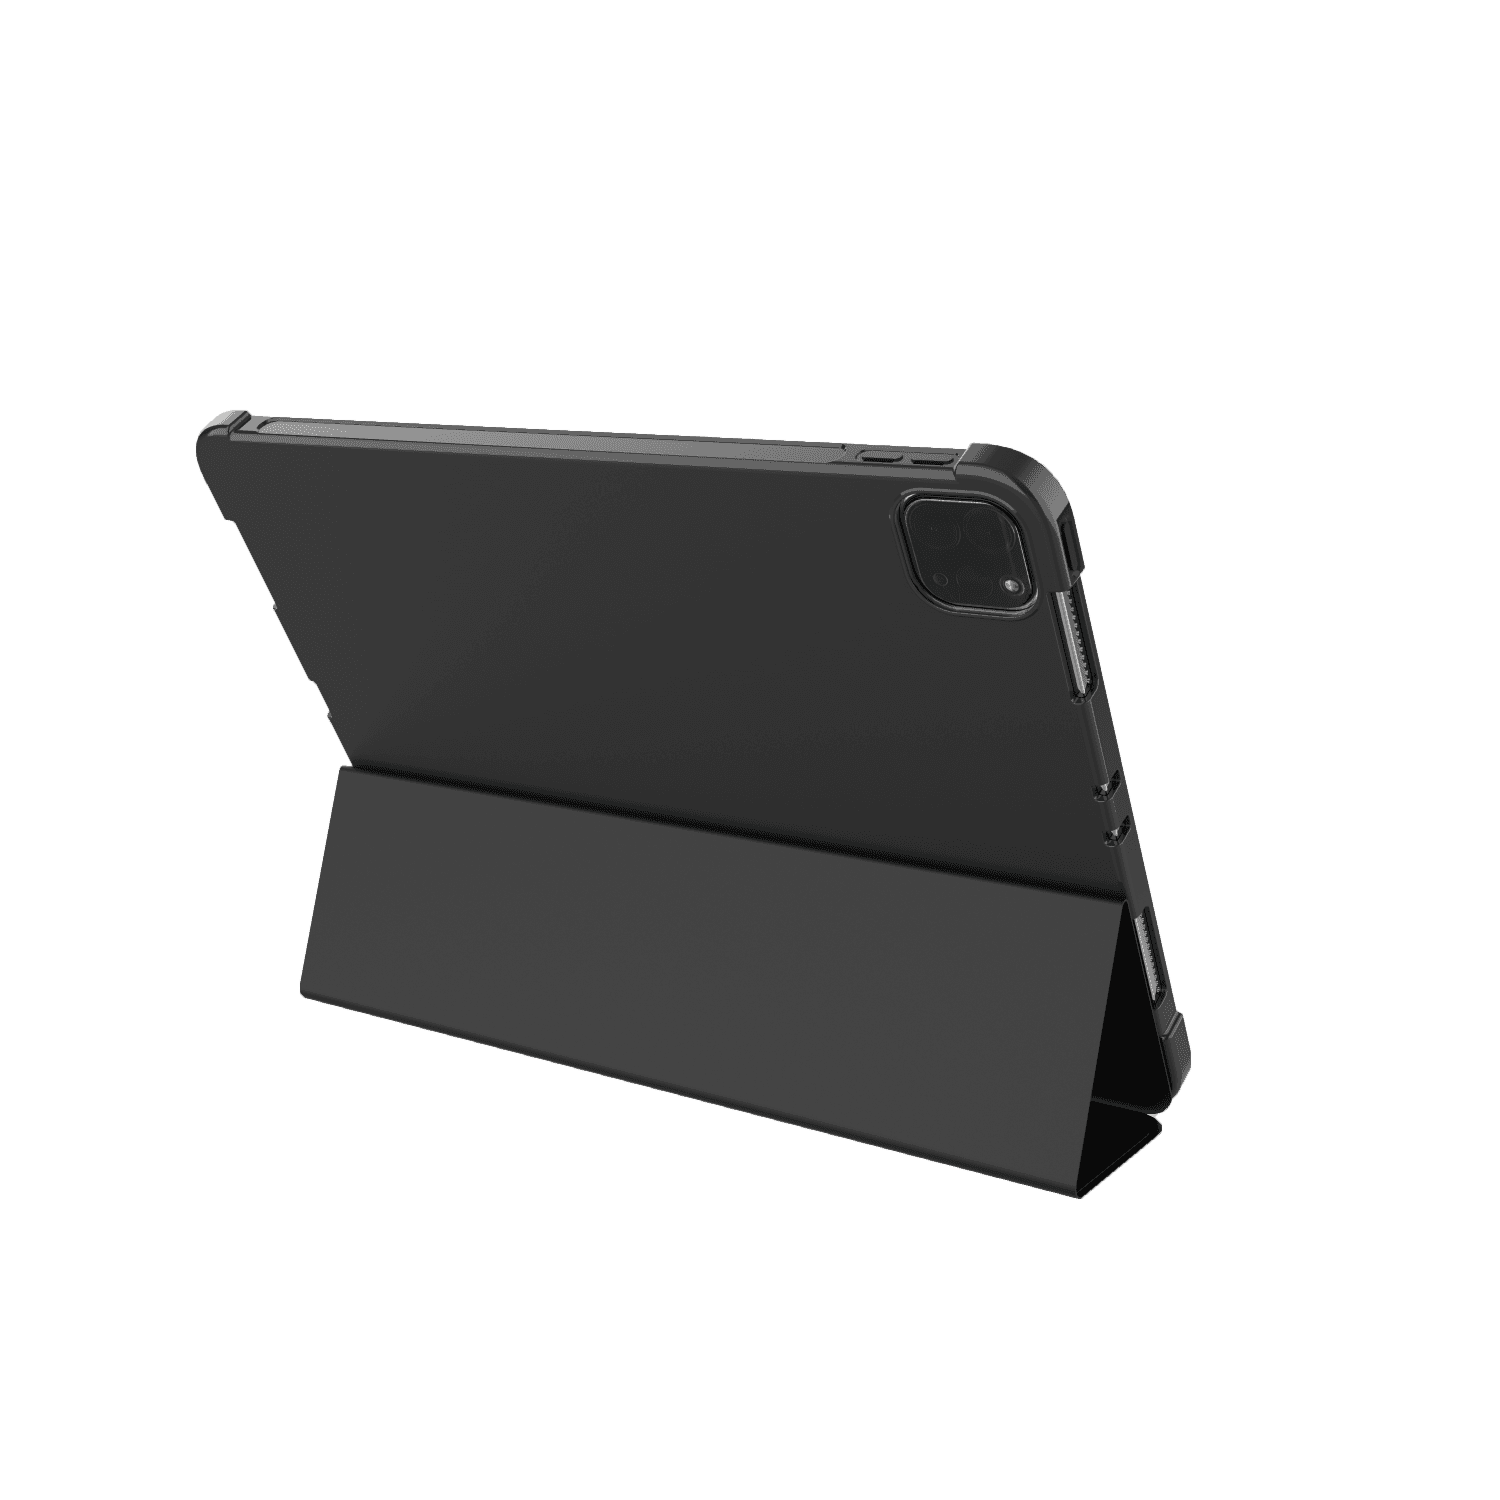 جراب ايباد 10 جلد أسود جرين ليون Green Lion Corbet Leather Folio Case for iPad 12.9" 2021 Black - cG9zdDoxMzcxMjY1